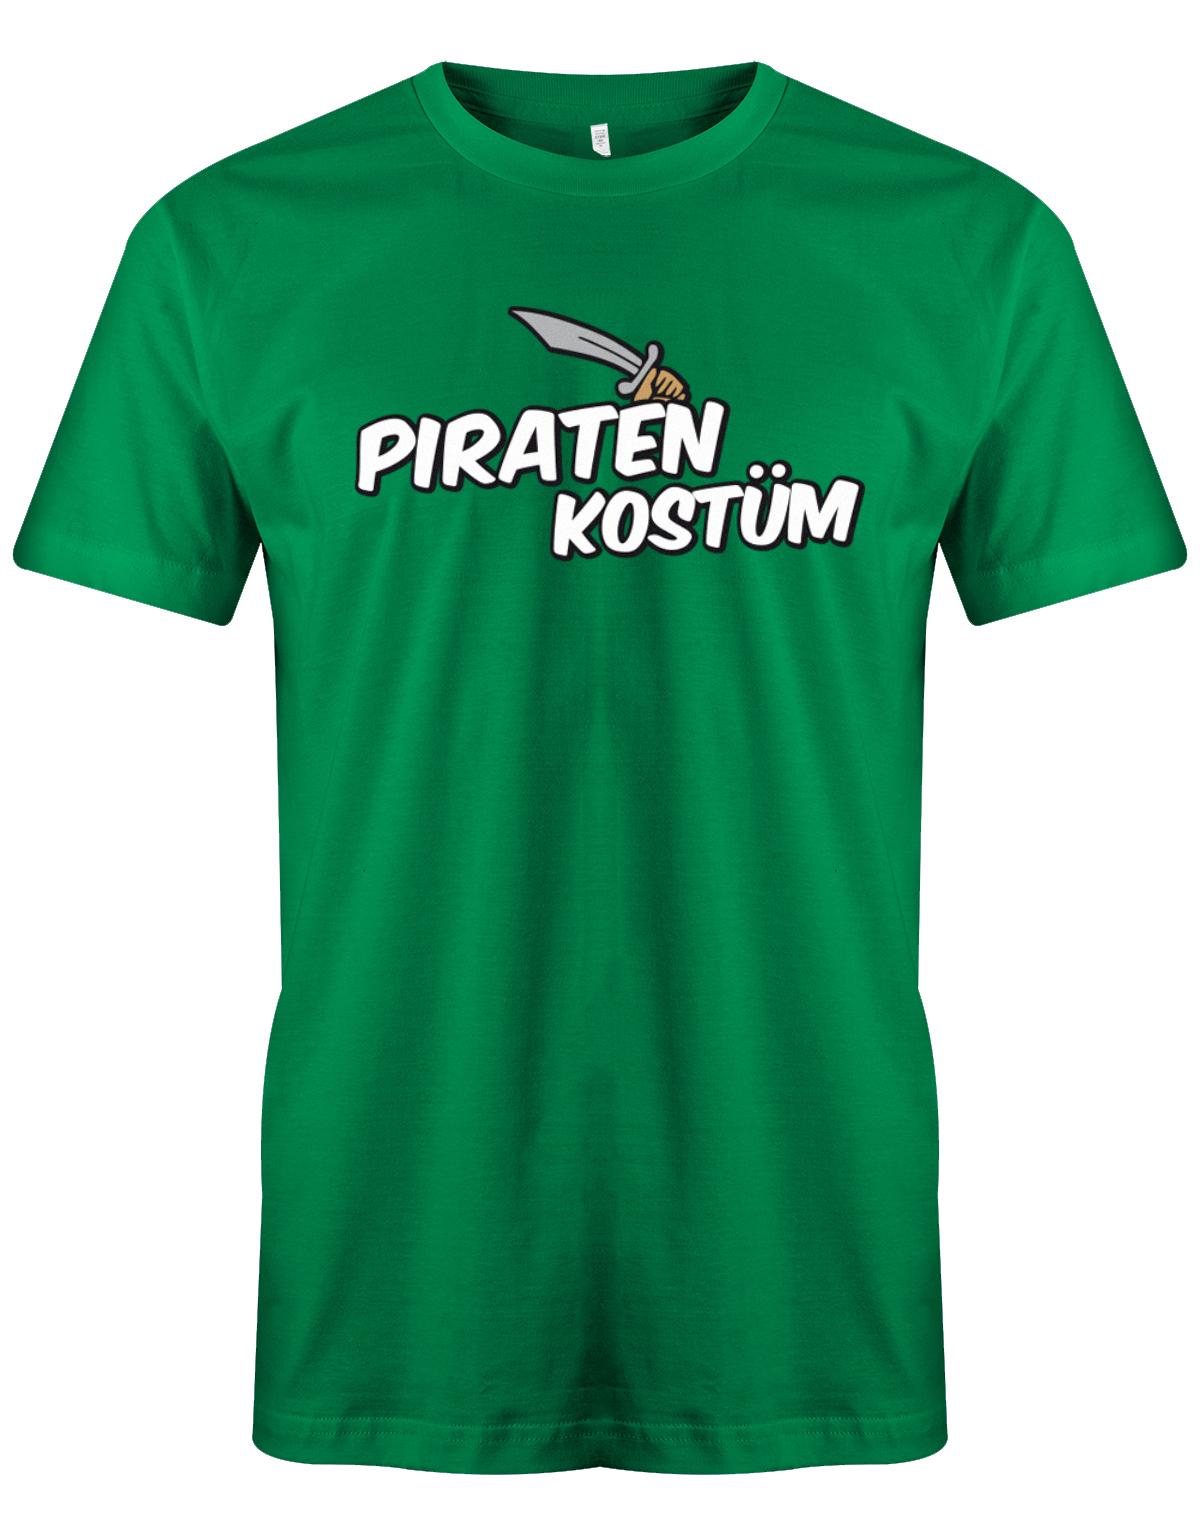 Piraten-Kost-m-Fasching-Karneval-herren-Shirt-Gr-n